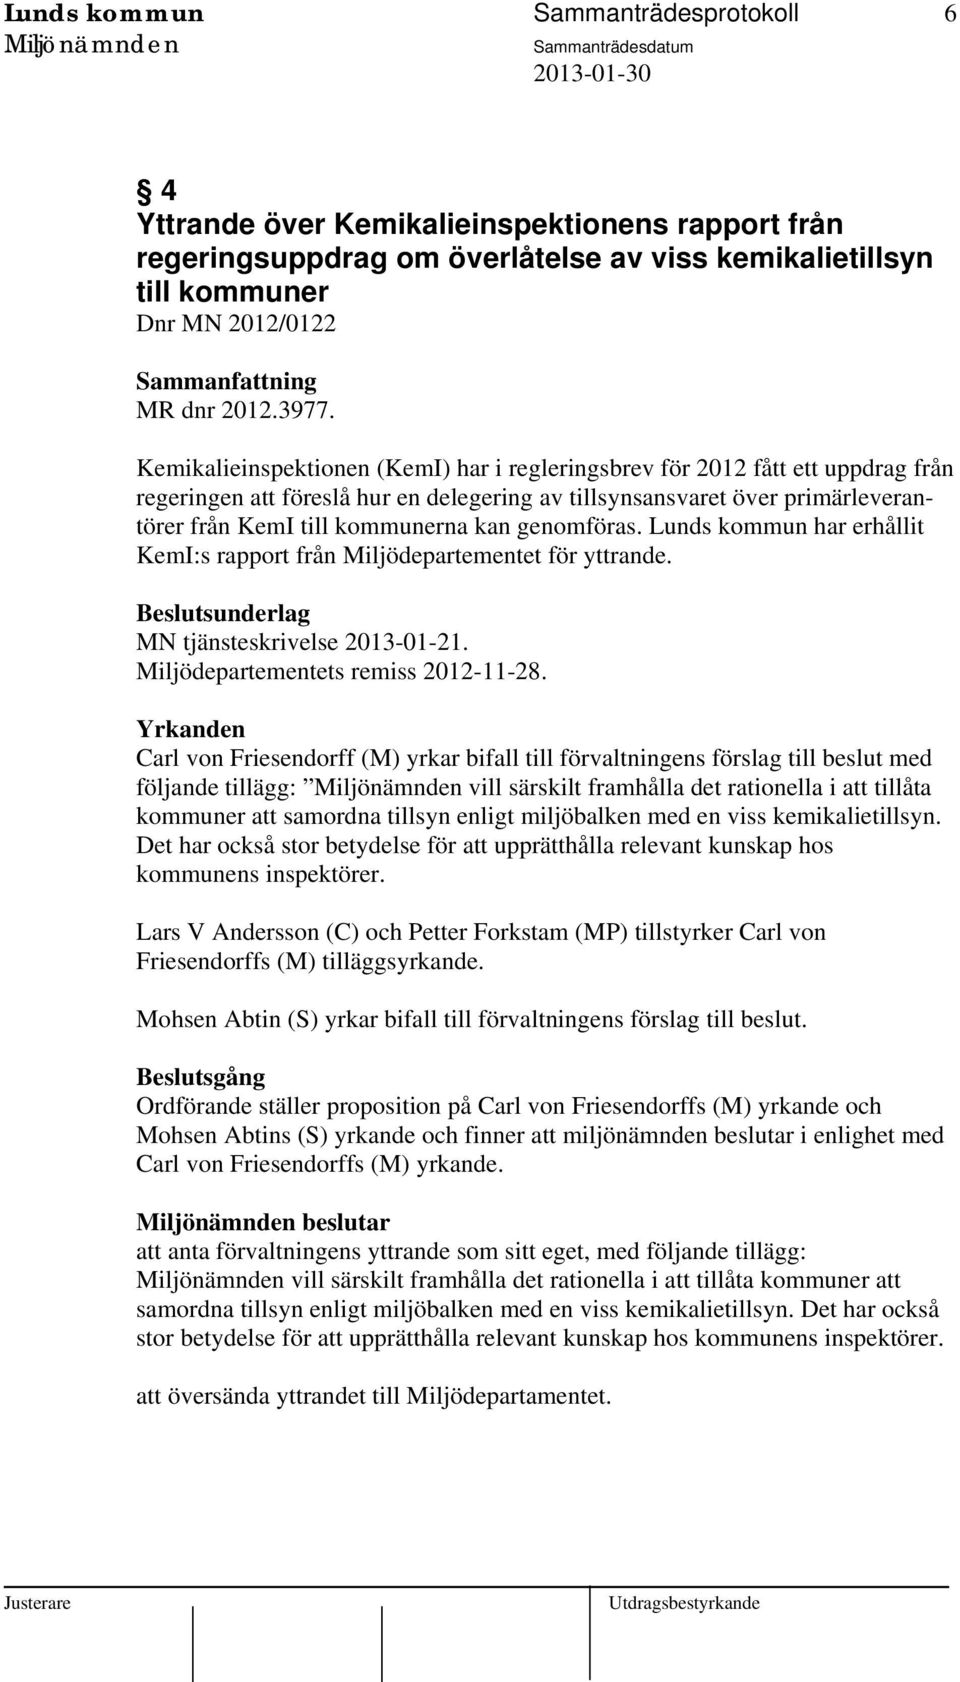 genomföras. Lunds kommun har erhållit KemI:s rapport från Miljödepartementet för yttrande. MN tjänsteskrivelse 2013-01-21. Miljödepartementets remiss 2012-11-28.